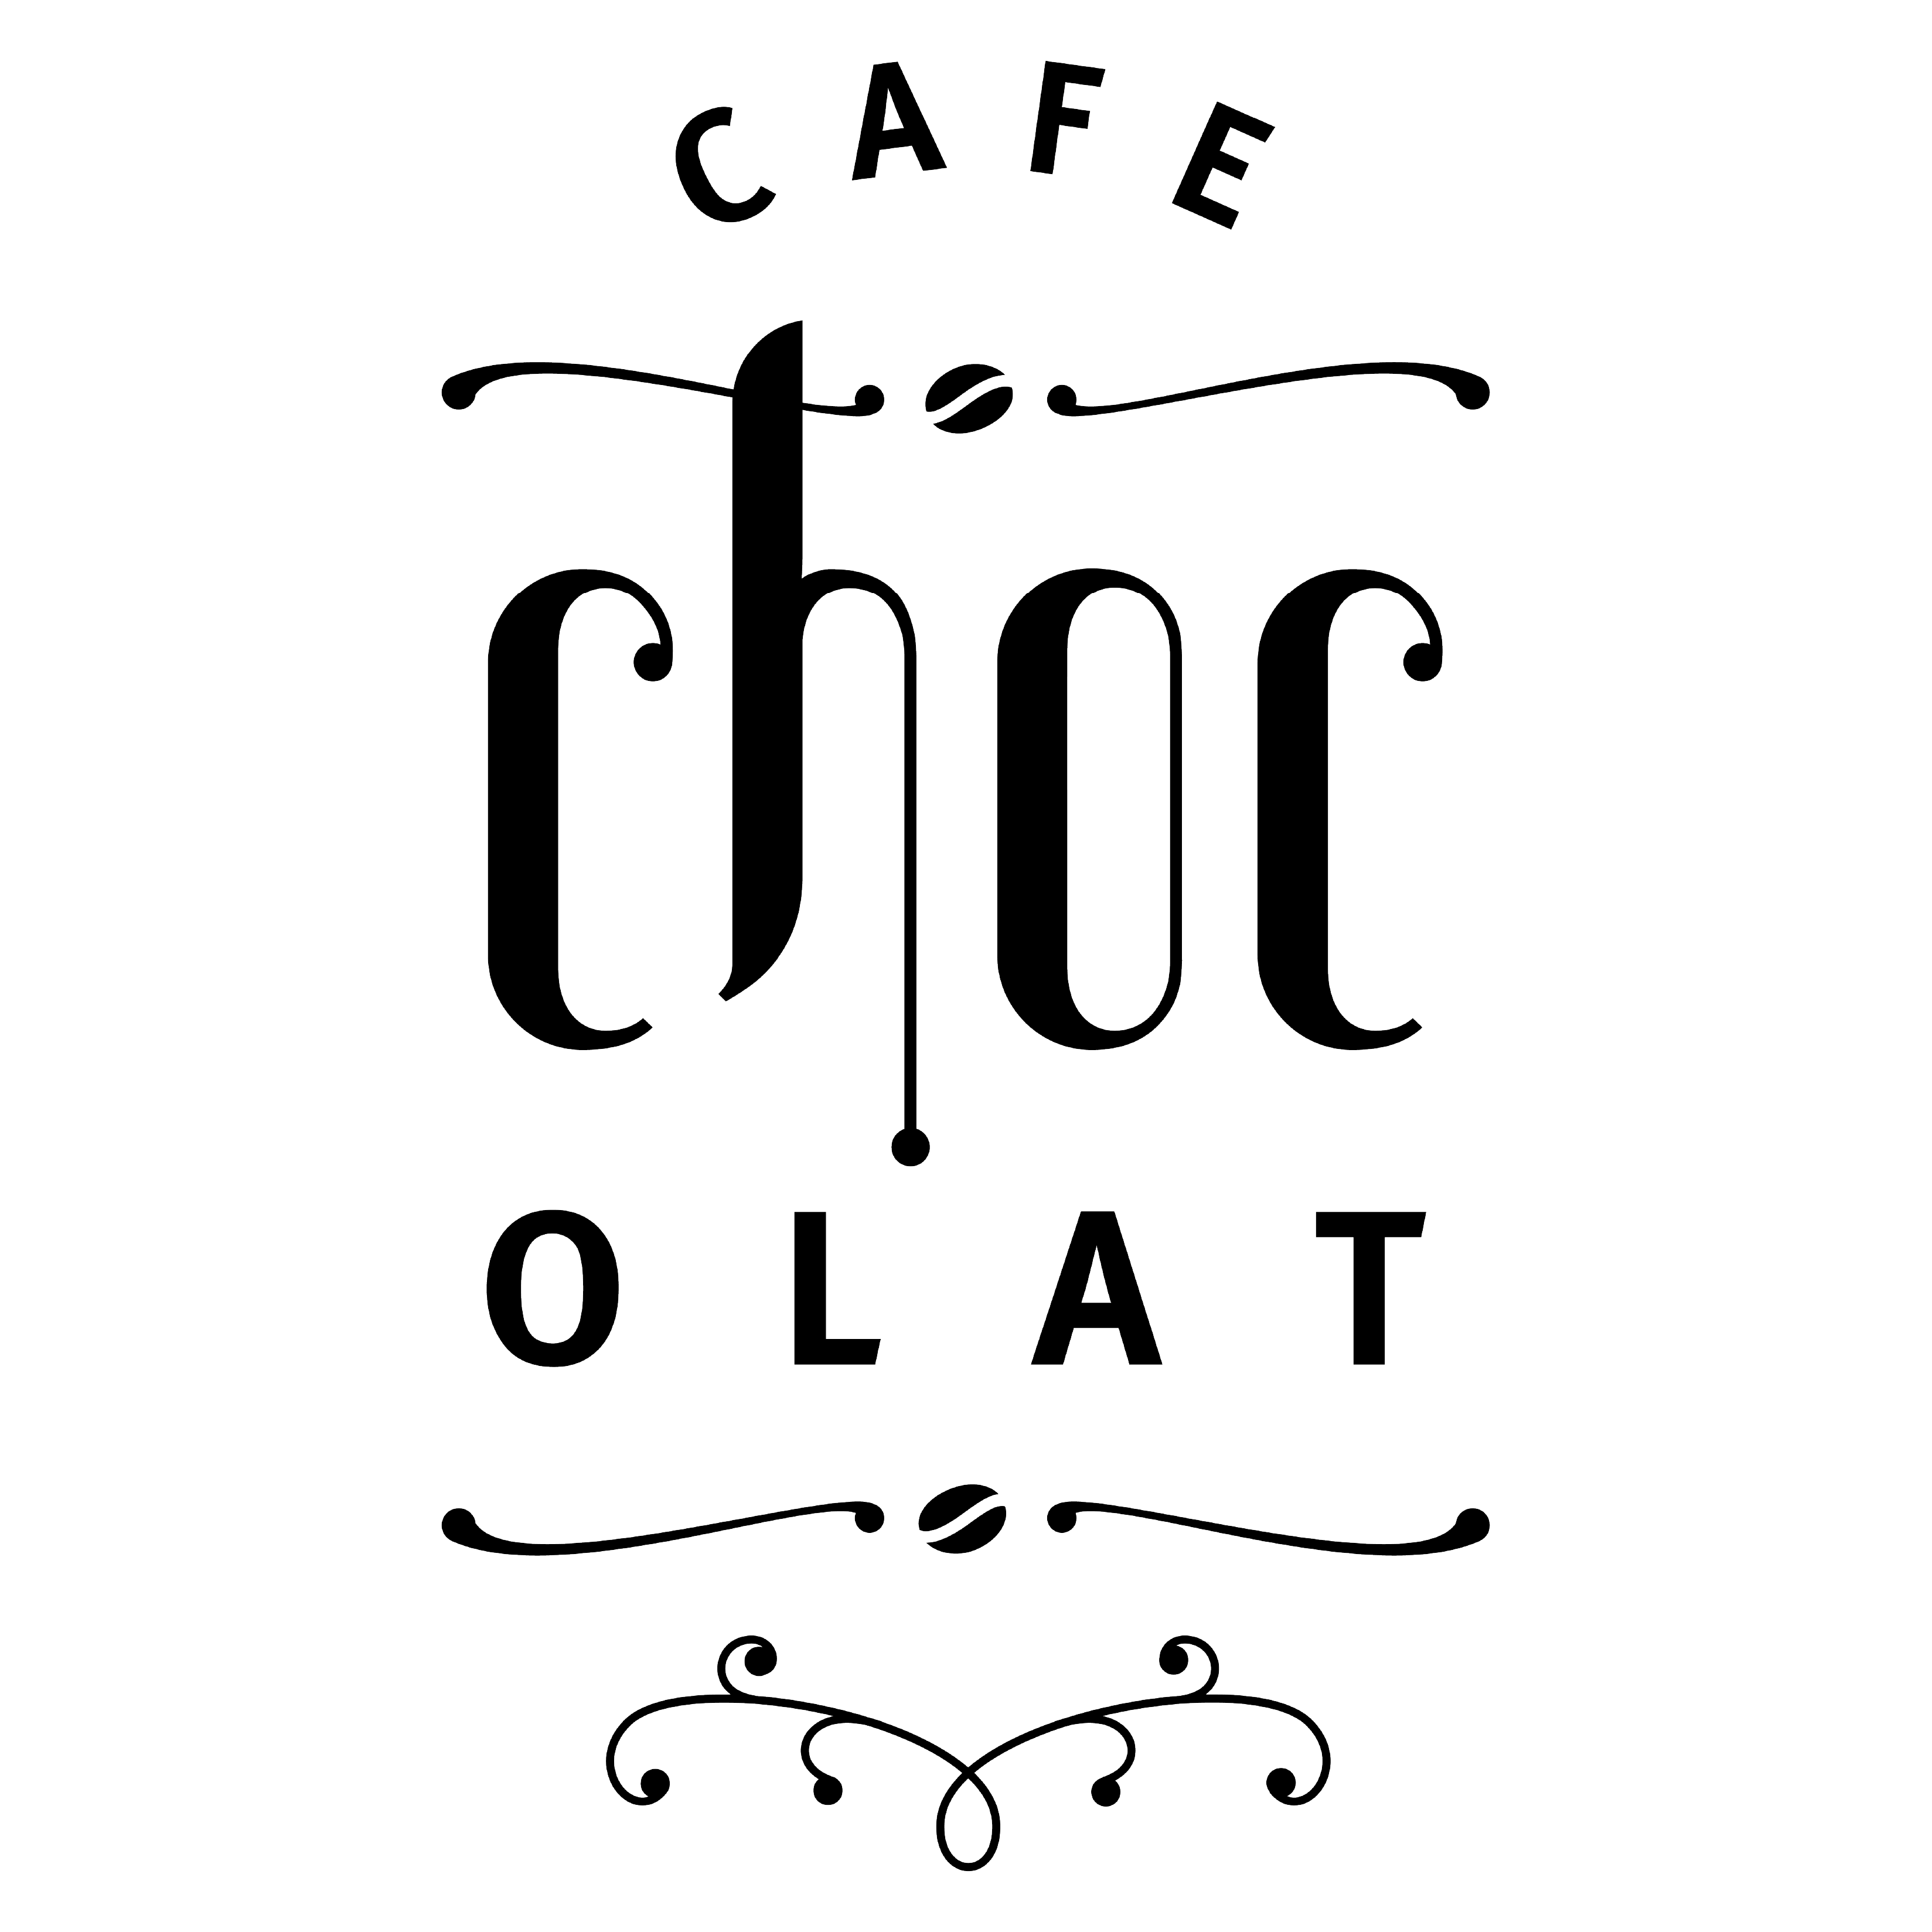 Cafe Chocolat’s